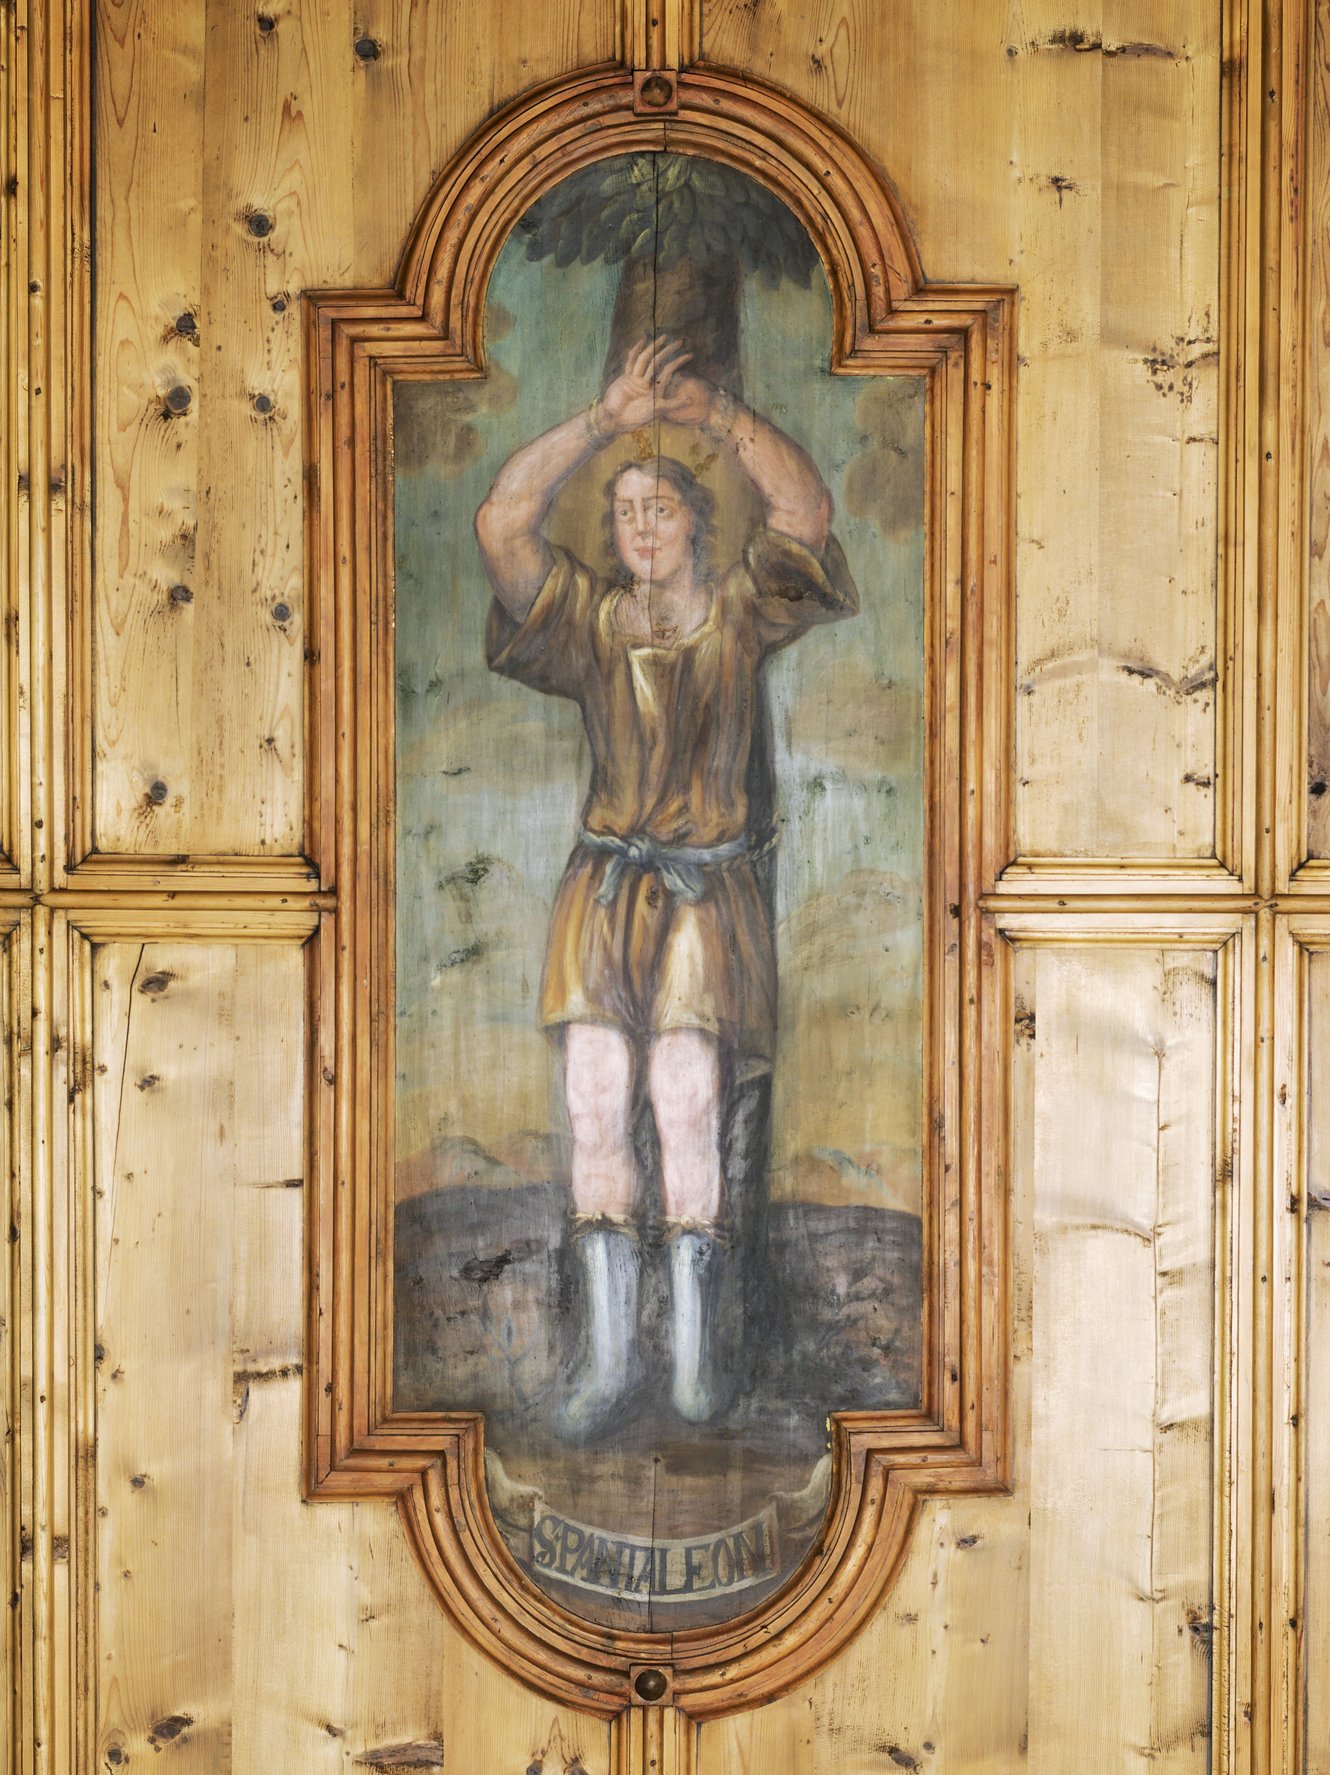 Hl. Pantaleon, Ausschnitt aus den Vierzehn Nothelfern, Deckenbild aus der Pfarrkirche Bartholomäberg, Michael Lorünser, 1732; Foto: Dieter Petras